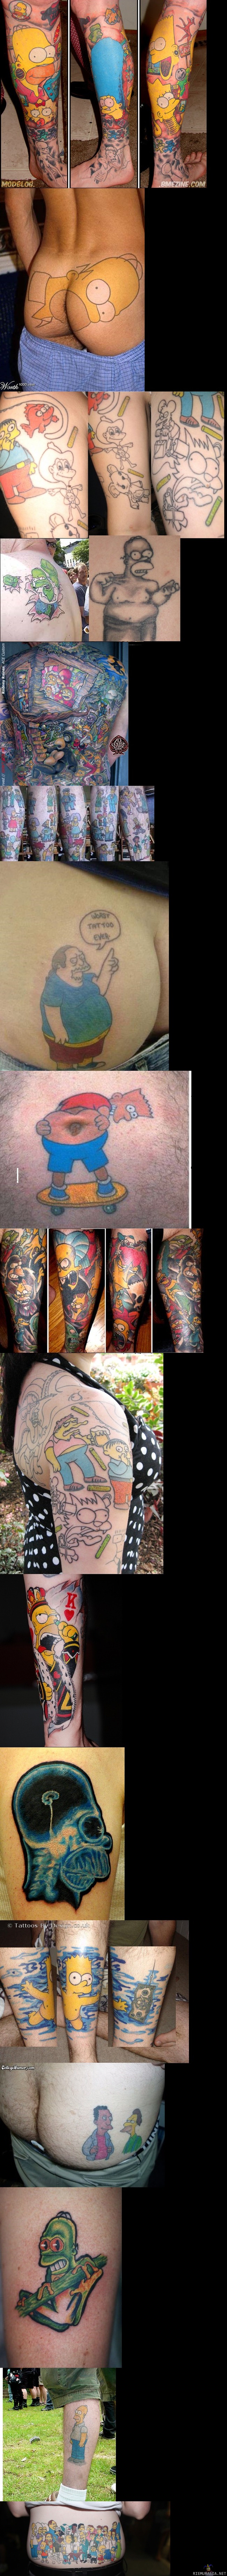 Simpsons tattoos